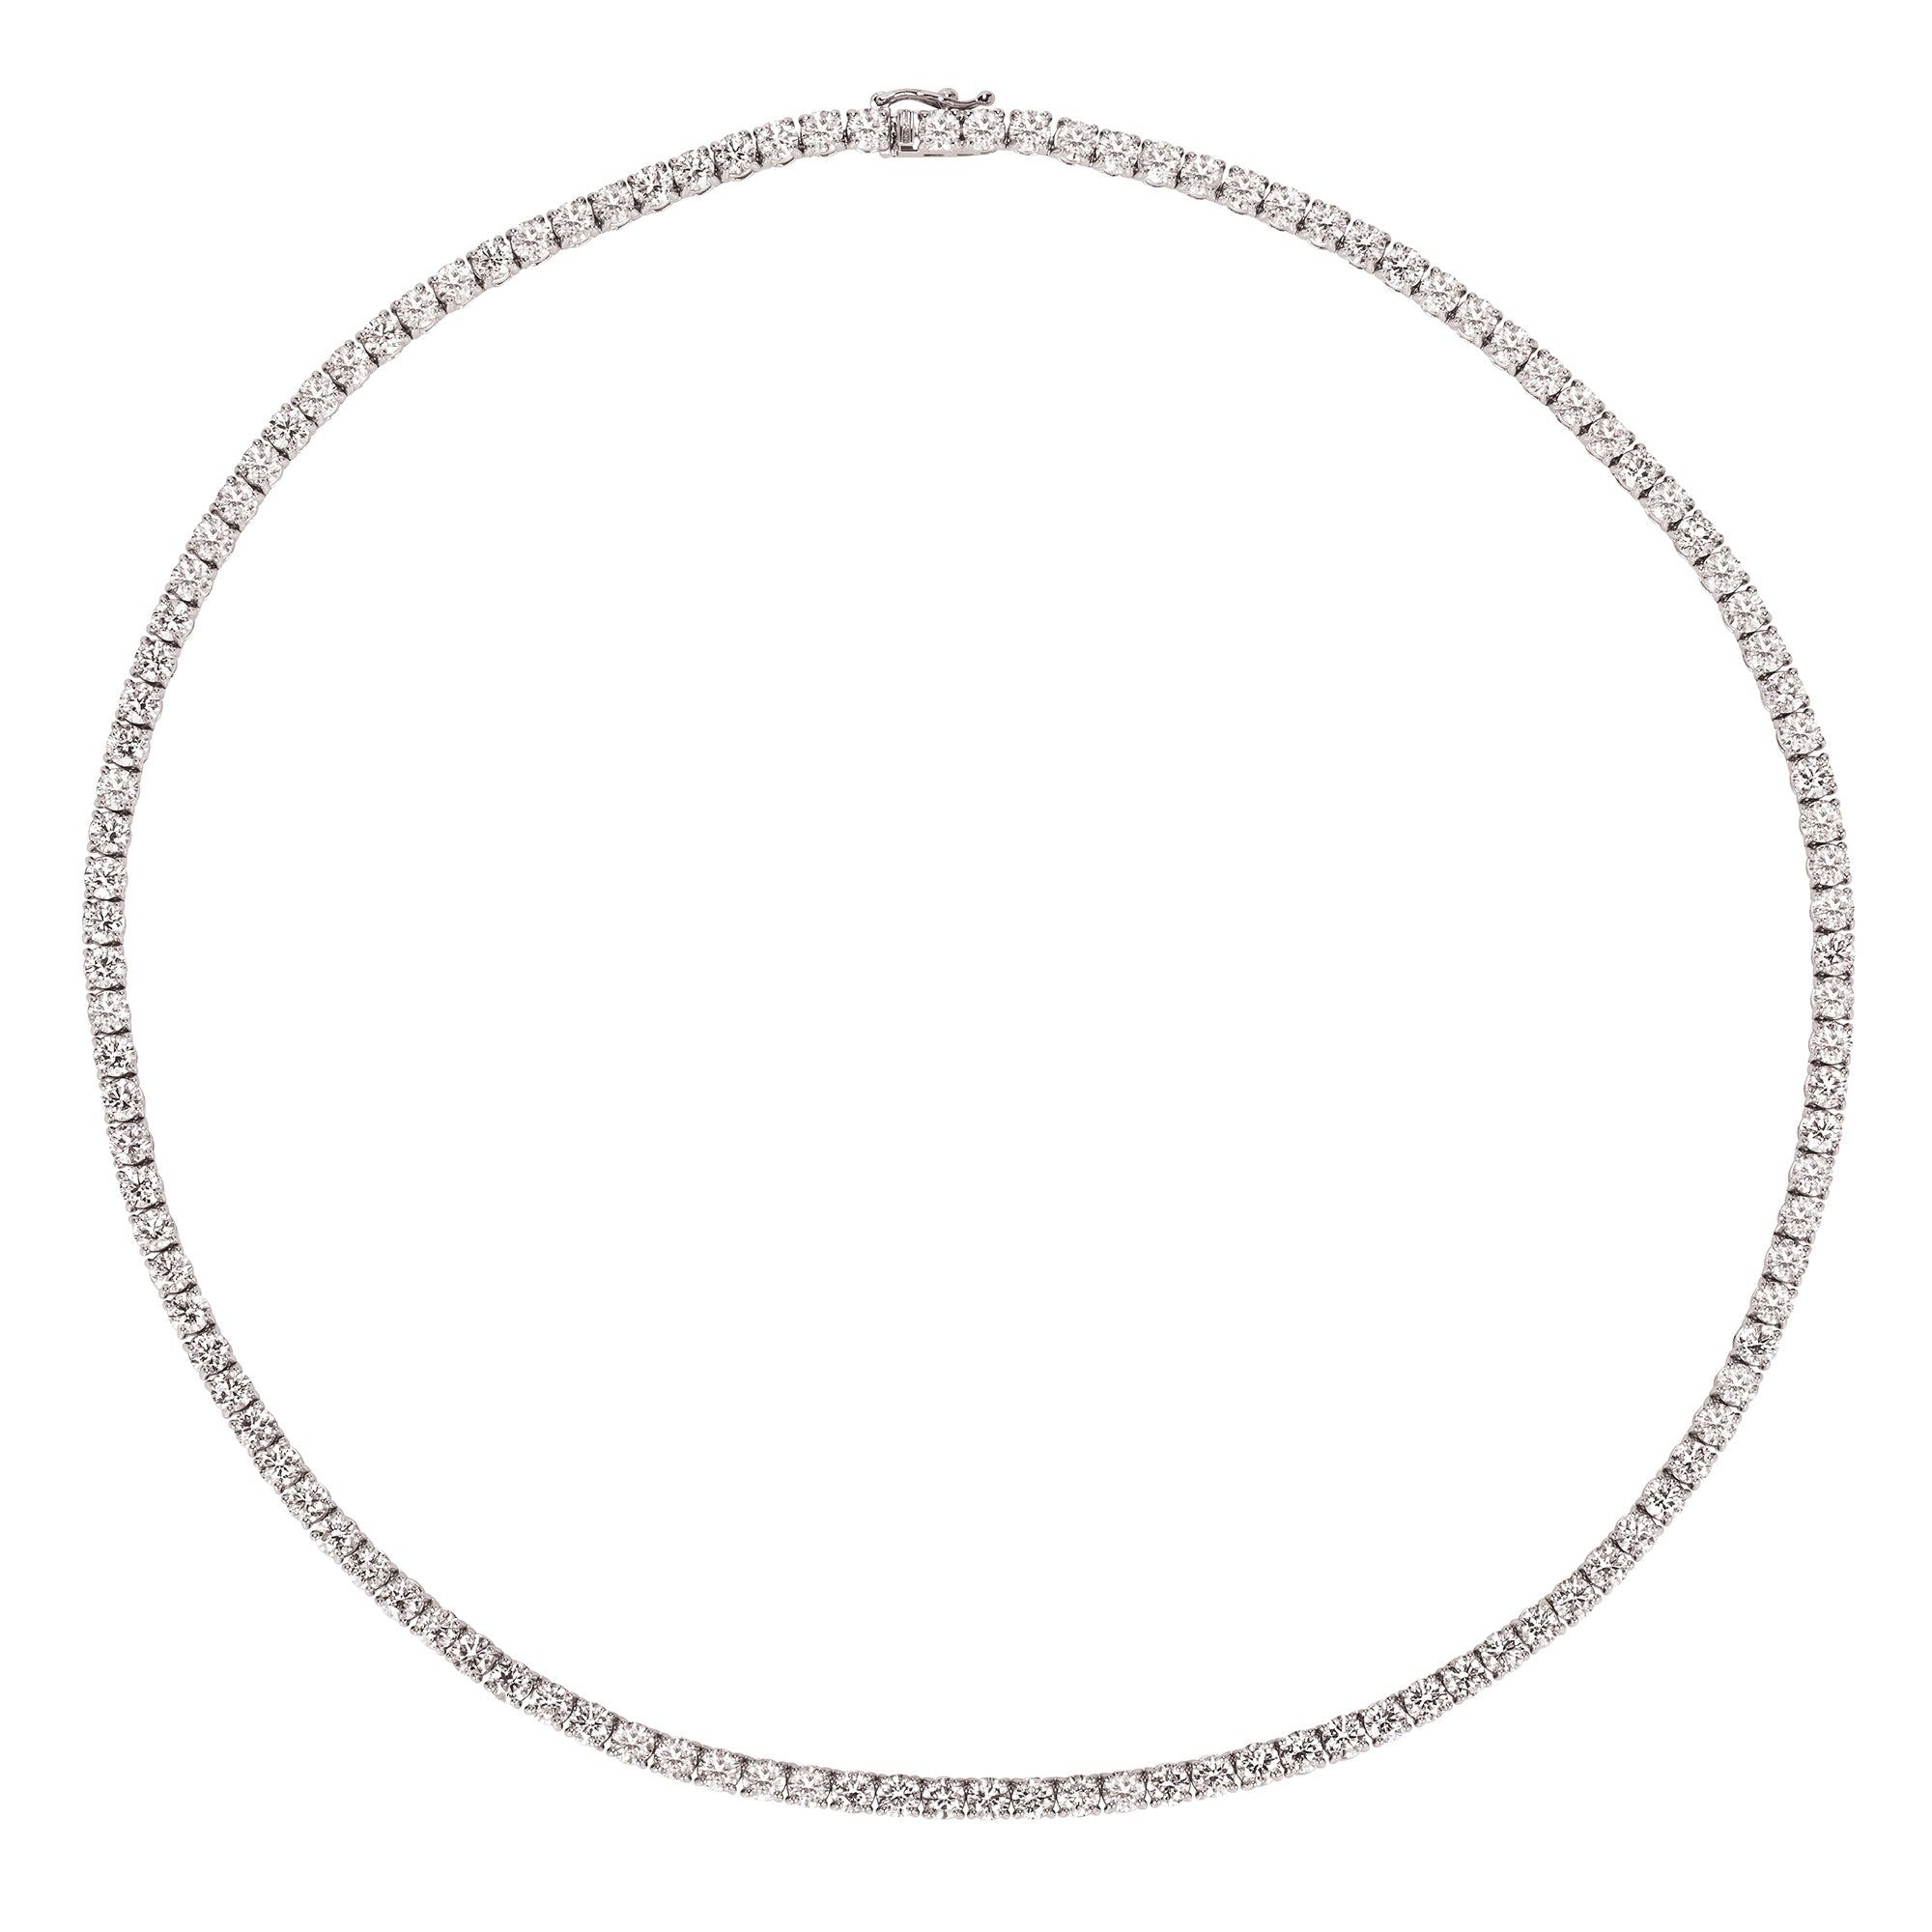 0.15 Carat Diamond V Shape Necklace 16 14K White Gold